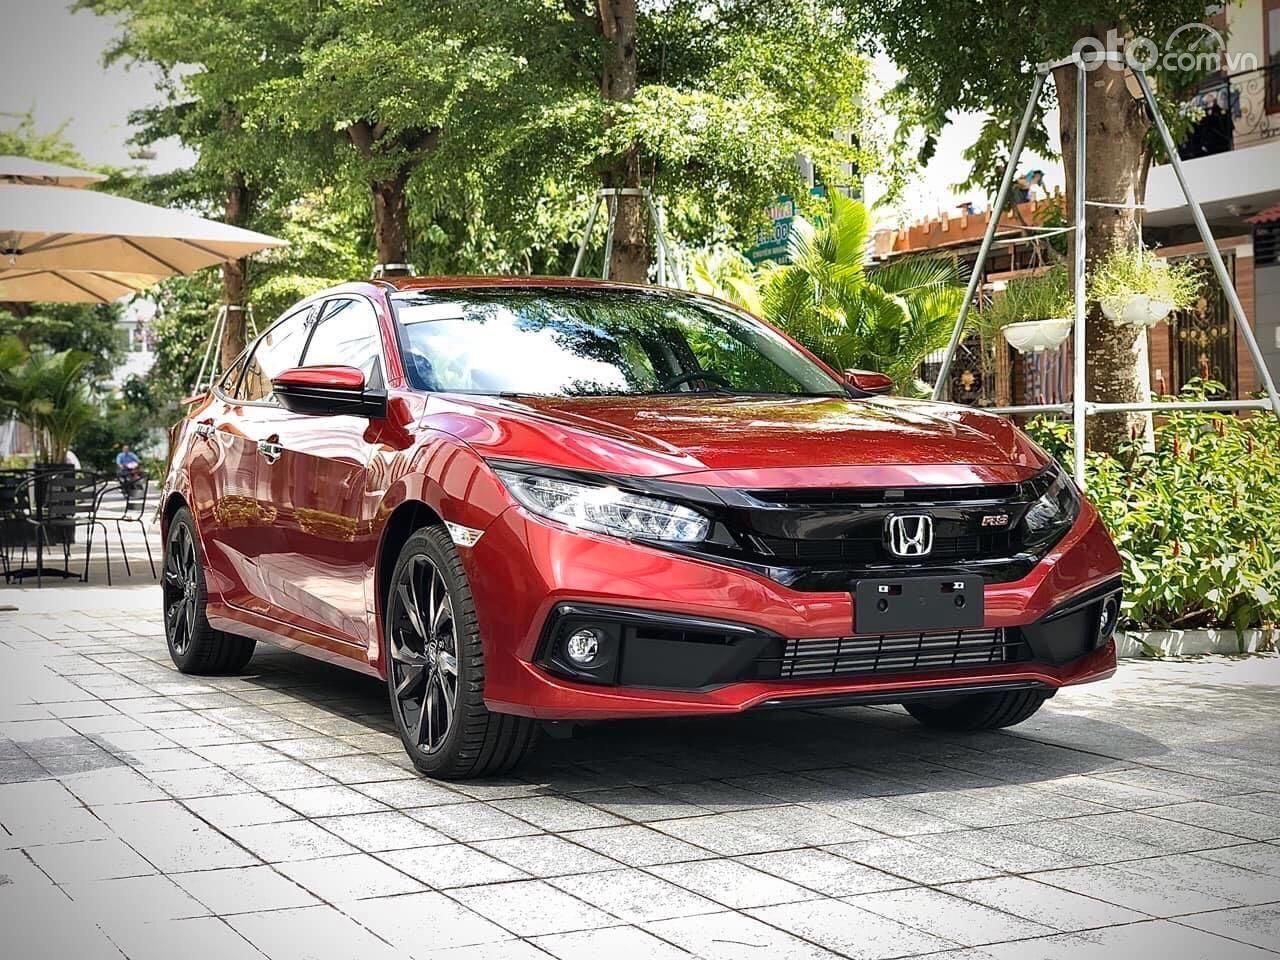 Honda Civic RS giảm 100% thuế trước bạ + ưu đãi từ đại lý